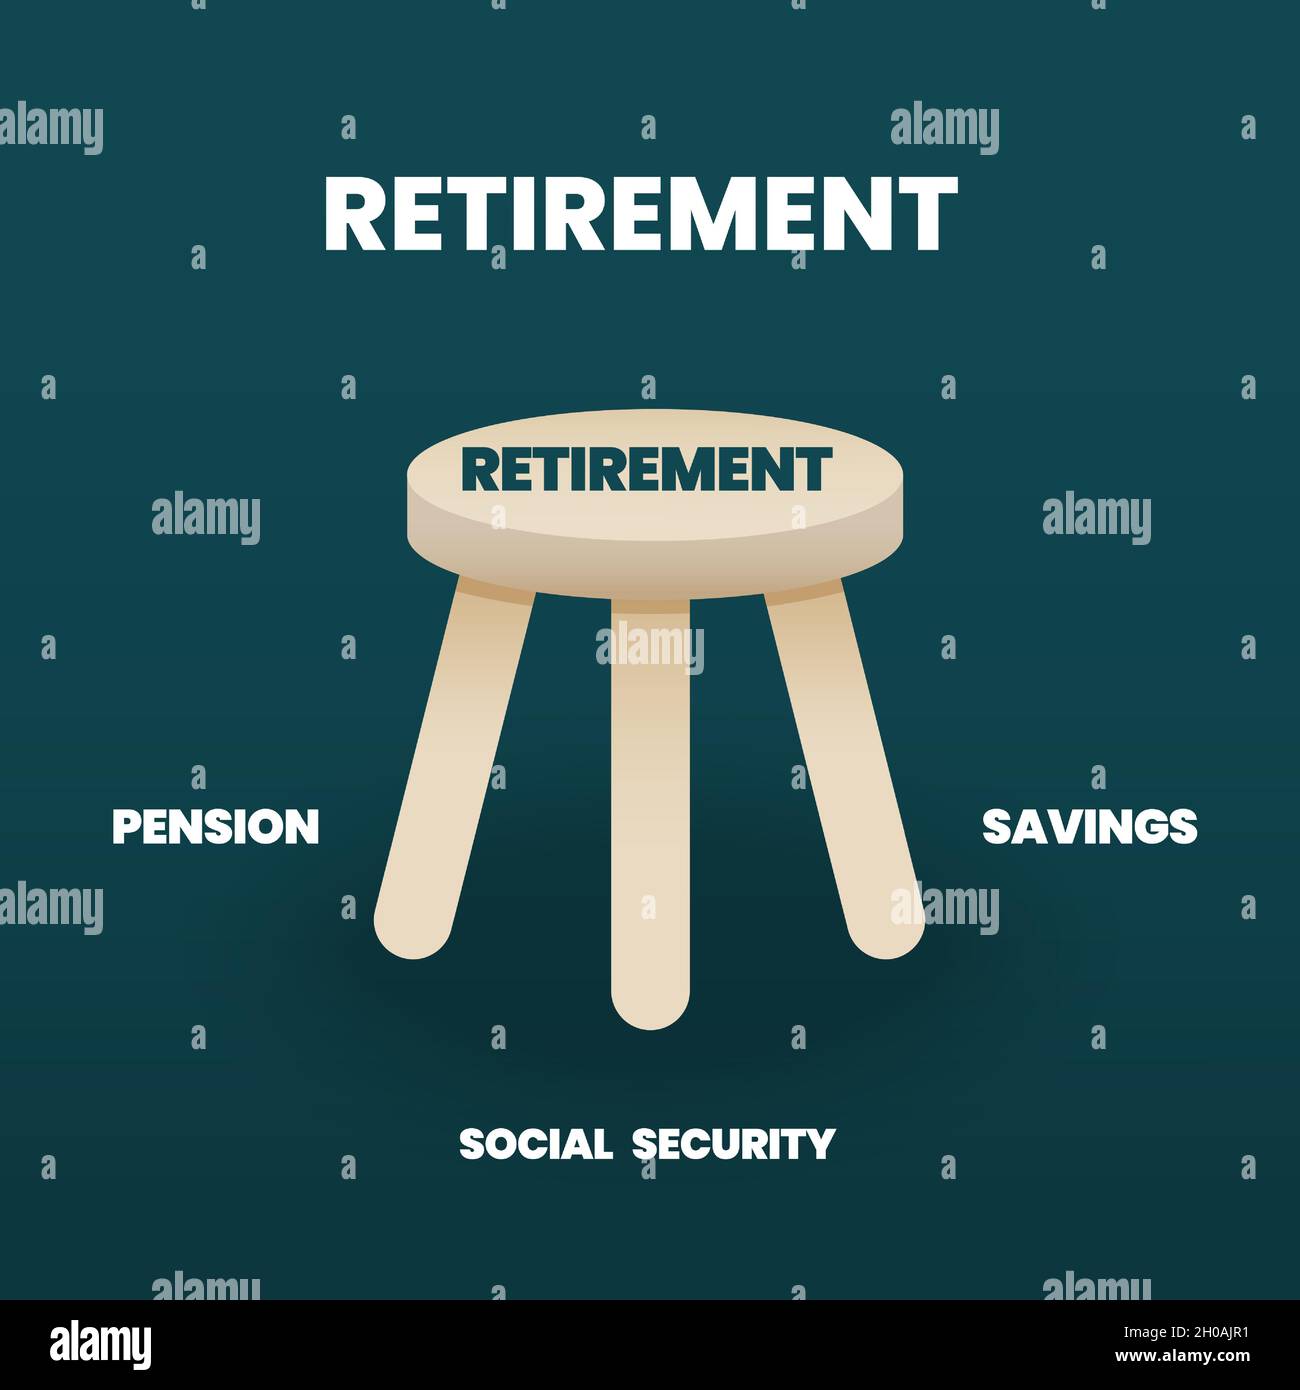 Le concept de retraite est un diagramme pour analyser la préparation d'une société vieillissante. Le tabouret à trois pattes a une pension, une épargne et une sécurité sociale Illustration de Vecteur